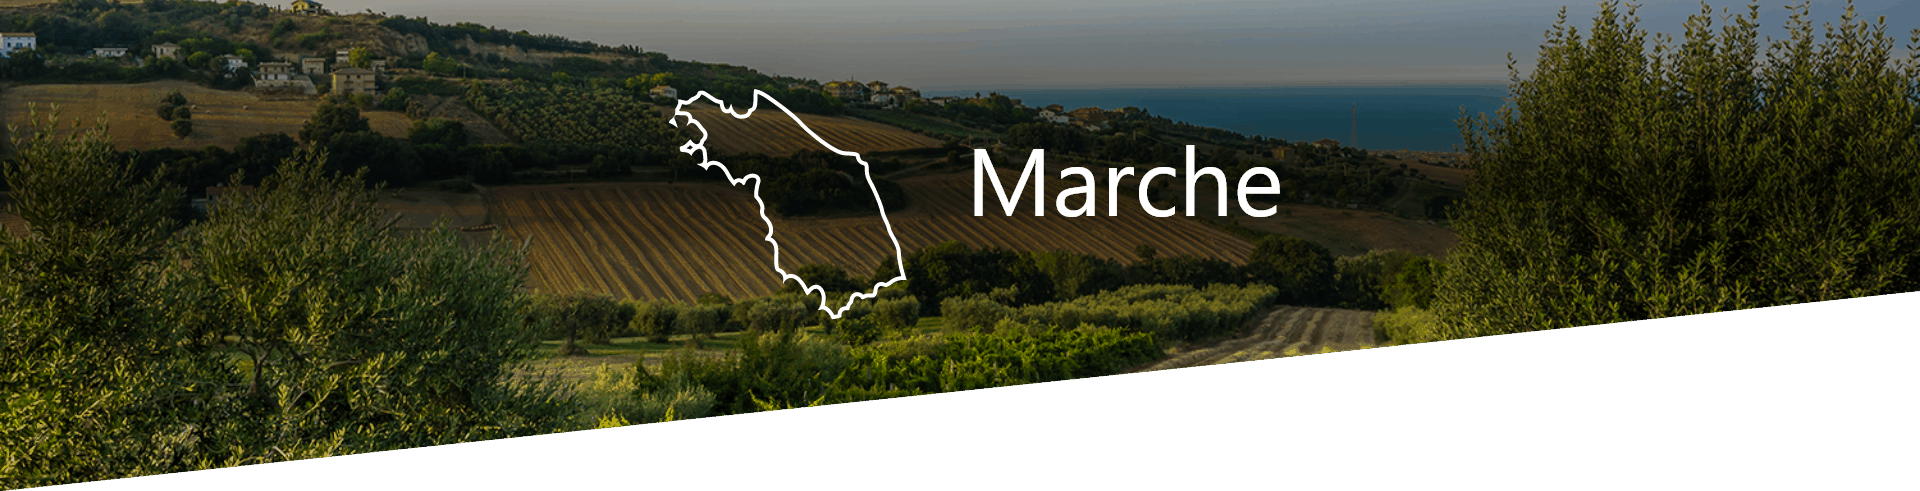 Selezione Vini e Cantine in Marche